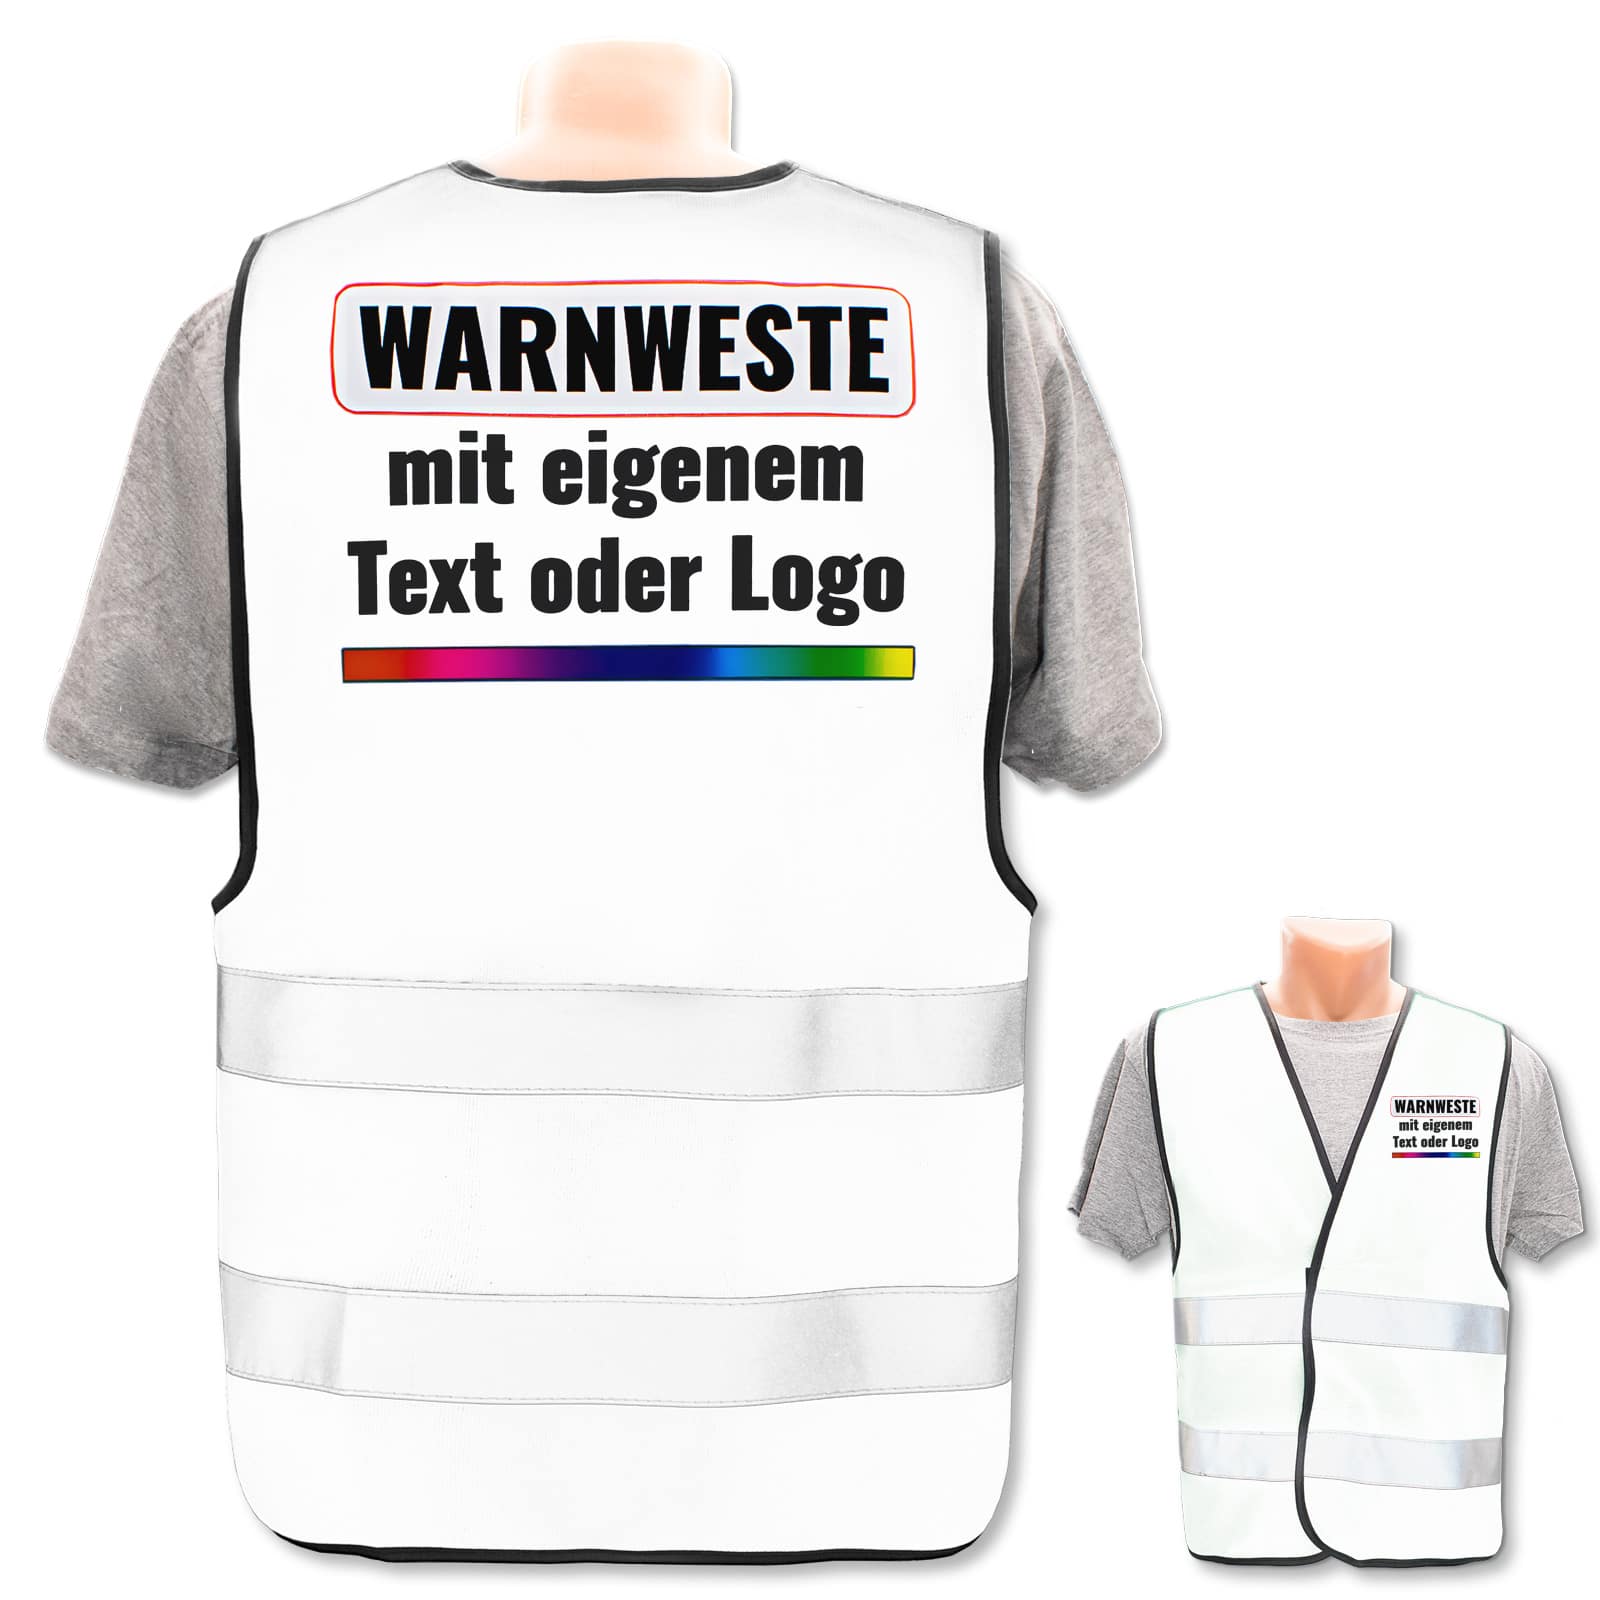 Warnweste Druckposition:Rücken Farbe Größe:Weiß M/L Brust Warnweste Bedruckt mit Ihrem Name Text Bild Logo * echte Reflex-Leuchtstreifen * personalisiertes Design selbst gestalten 